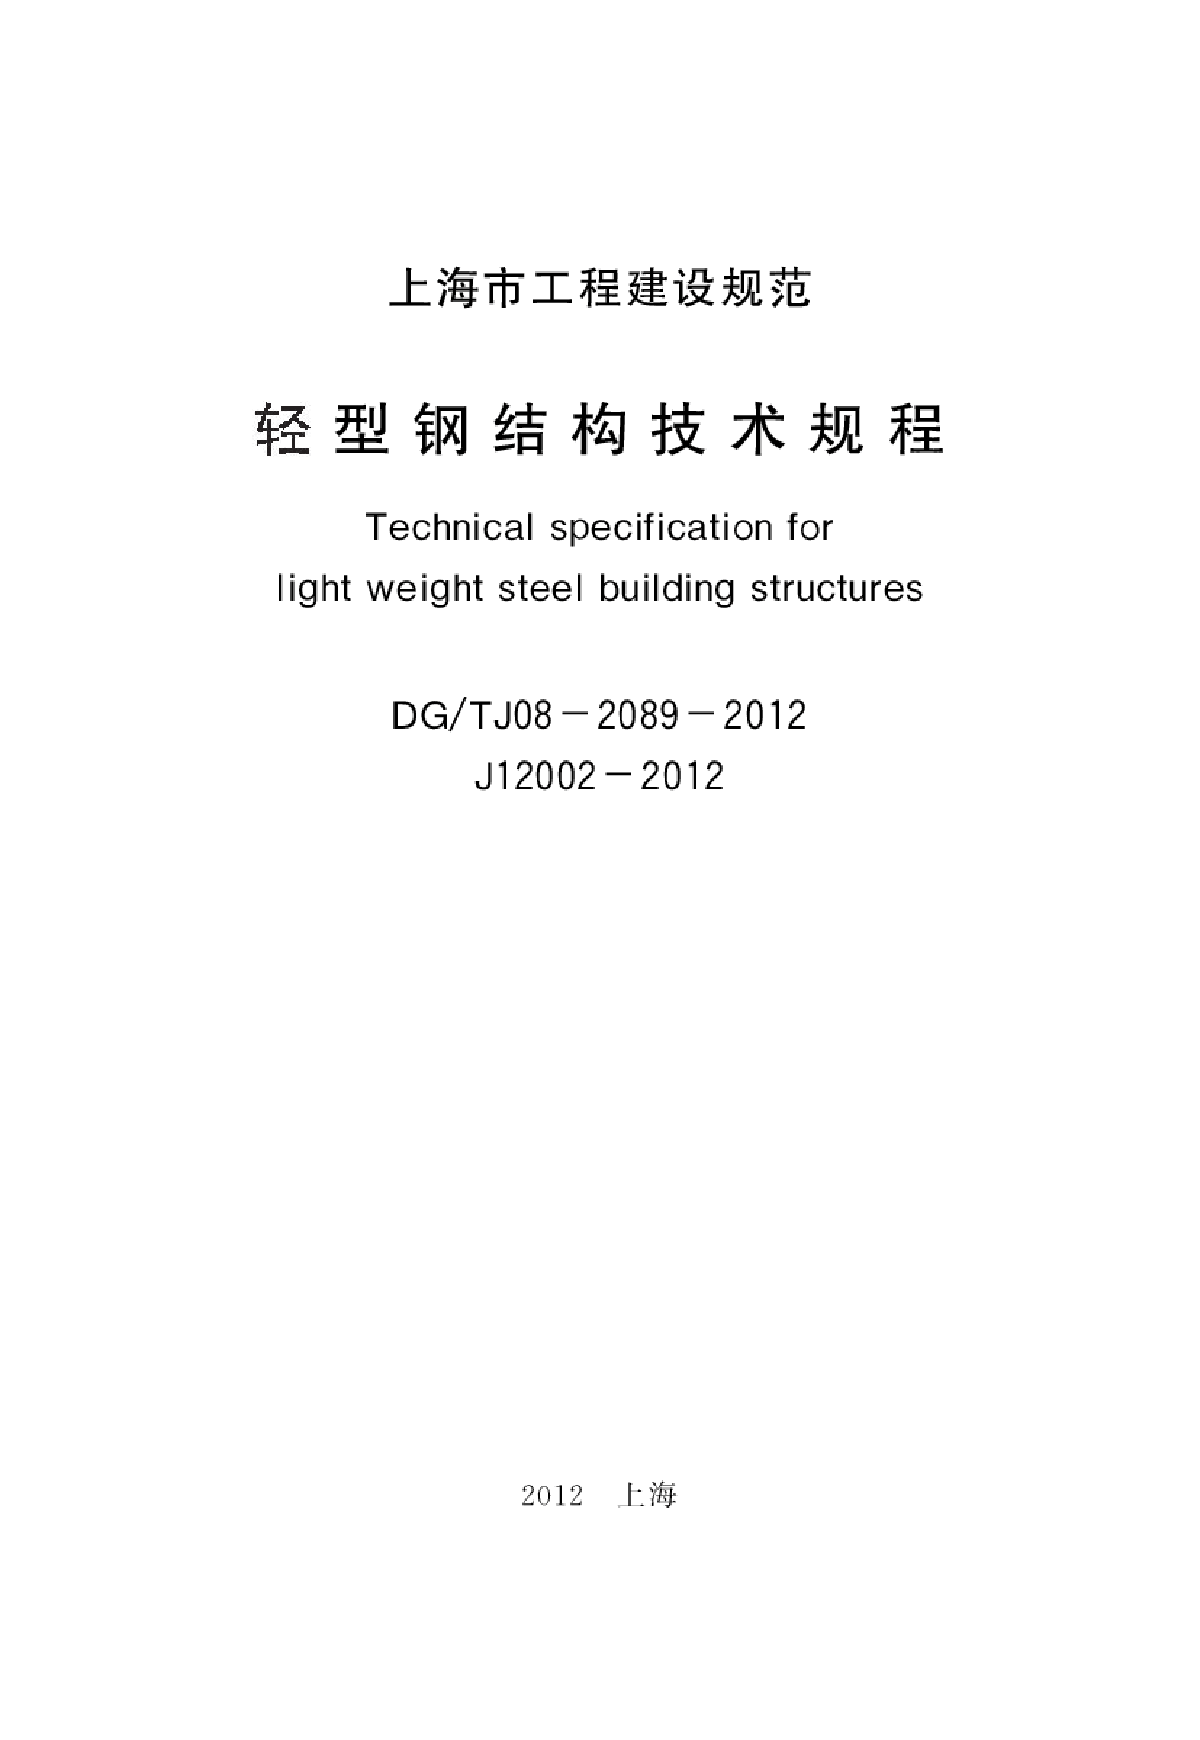 上海轻型钢结构技术规程 DGTJ08-2089-2012-图二